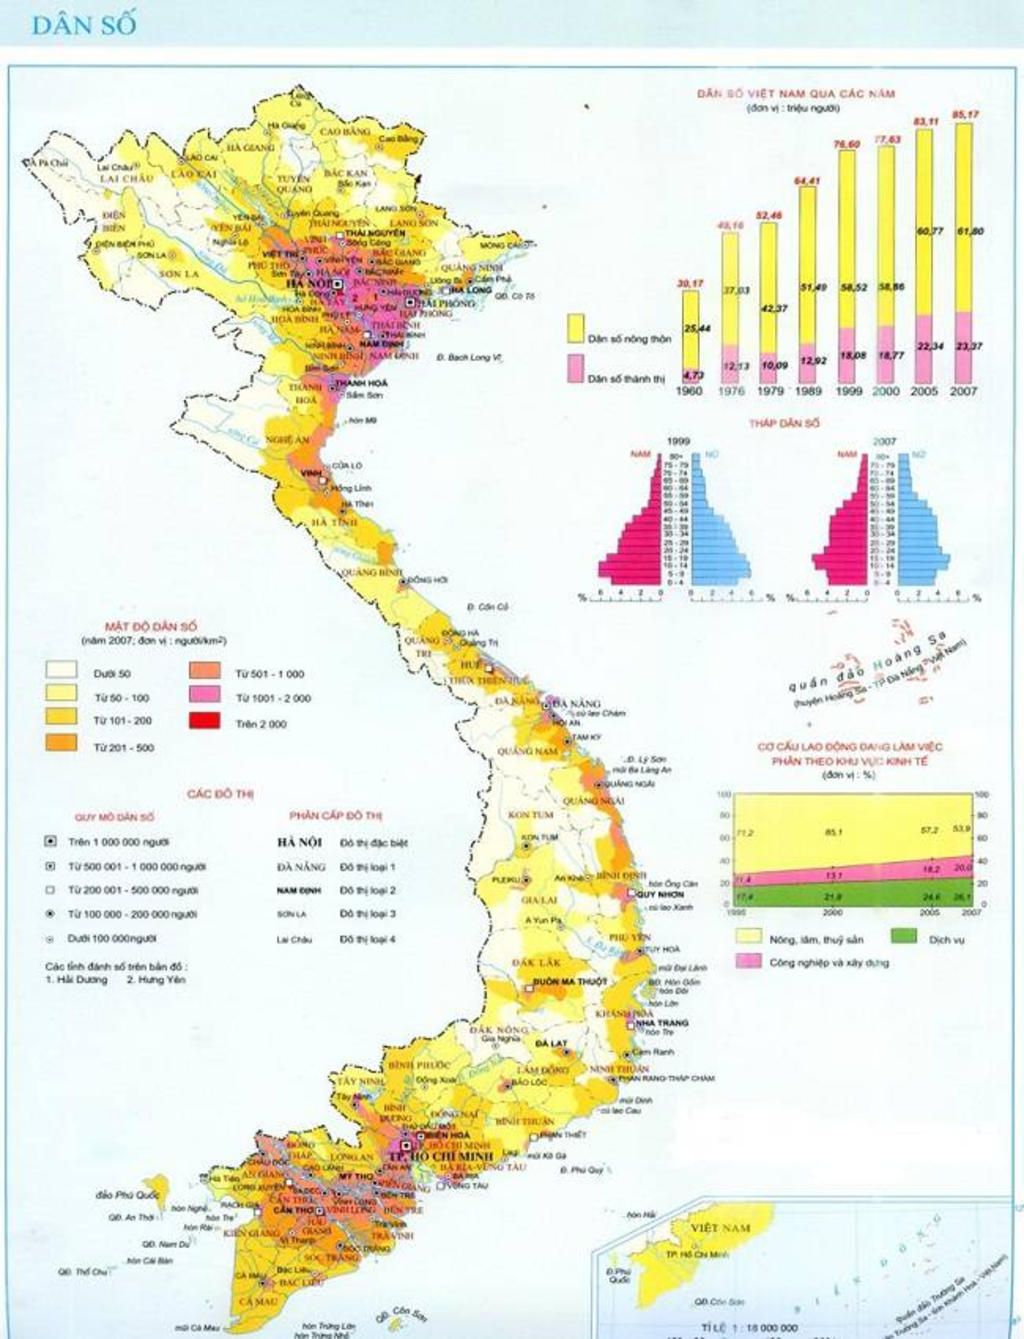 Hình ảnh về dân số năm 2007 sẽ cho bạn cái nhìn toàn diện về quy mô và phân bố dân cư của Việt Nam trong quá khứ. Đây là tài liệu quý giá để bạn có thể tìm hiểu được sự phát triển của đất nước và khả năng sinh sản cũng như đời sống dân cư tại đây.